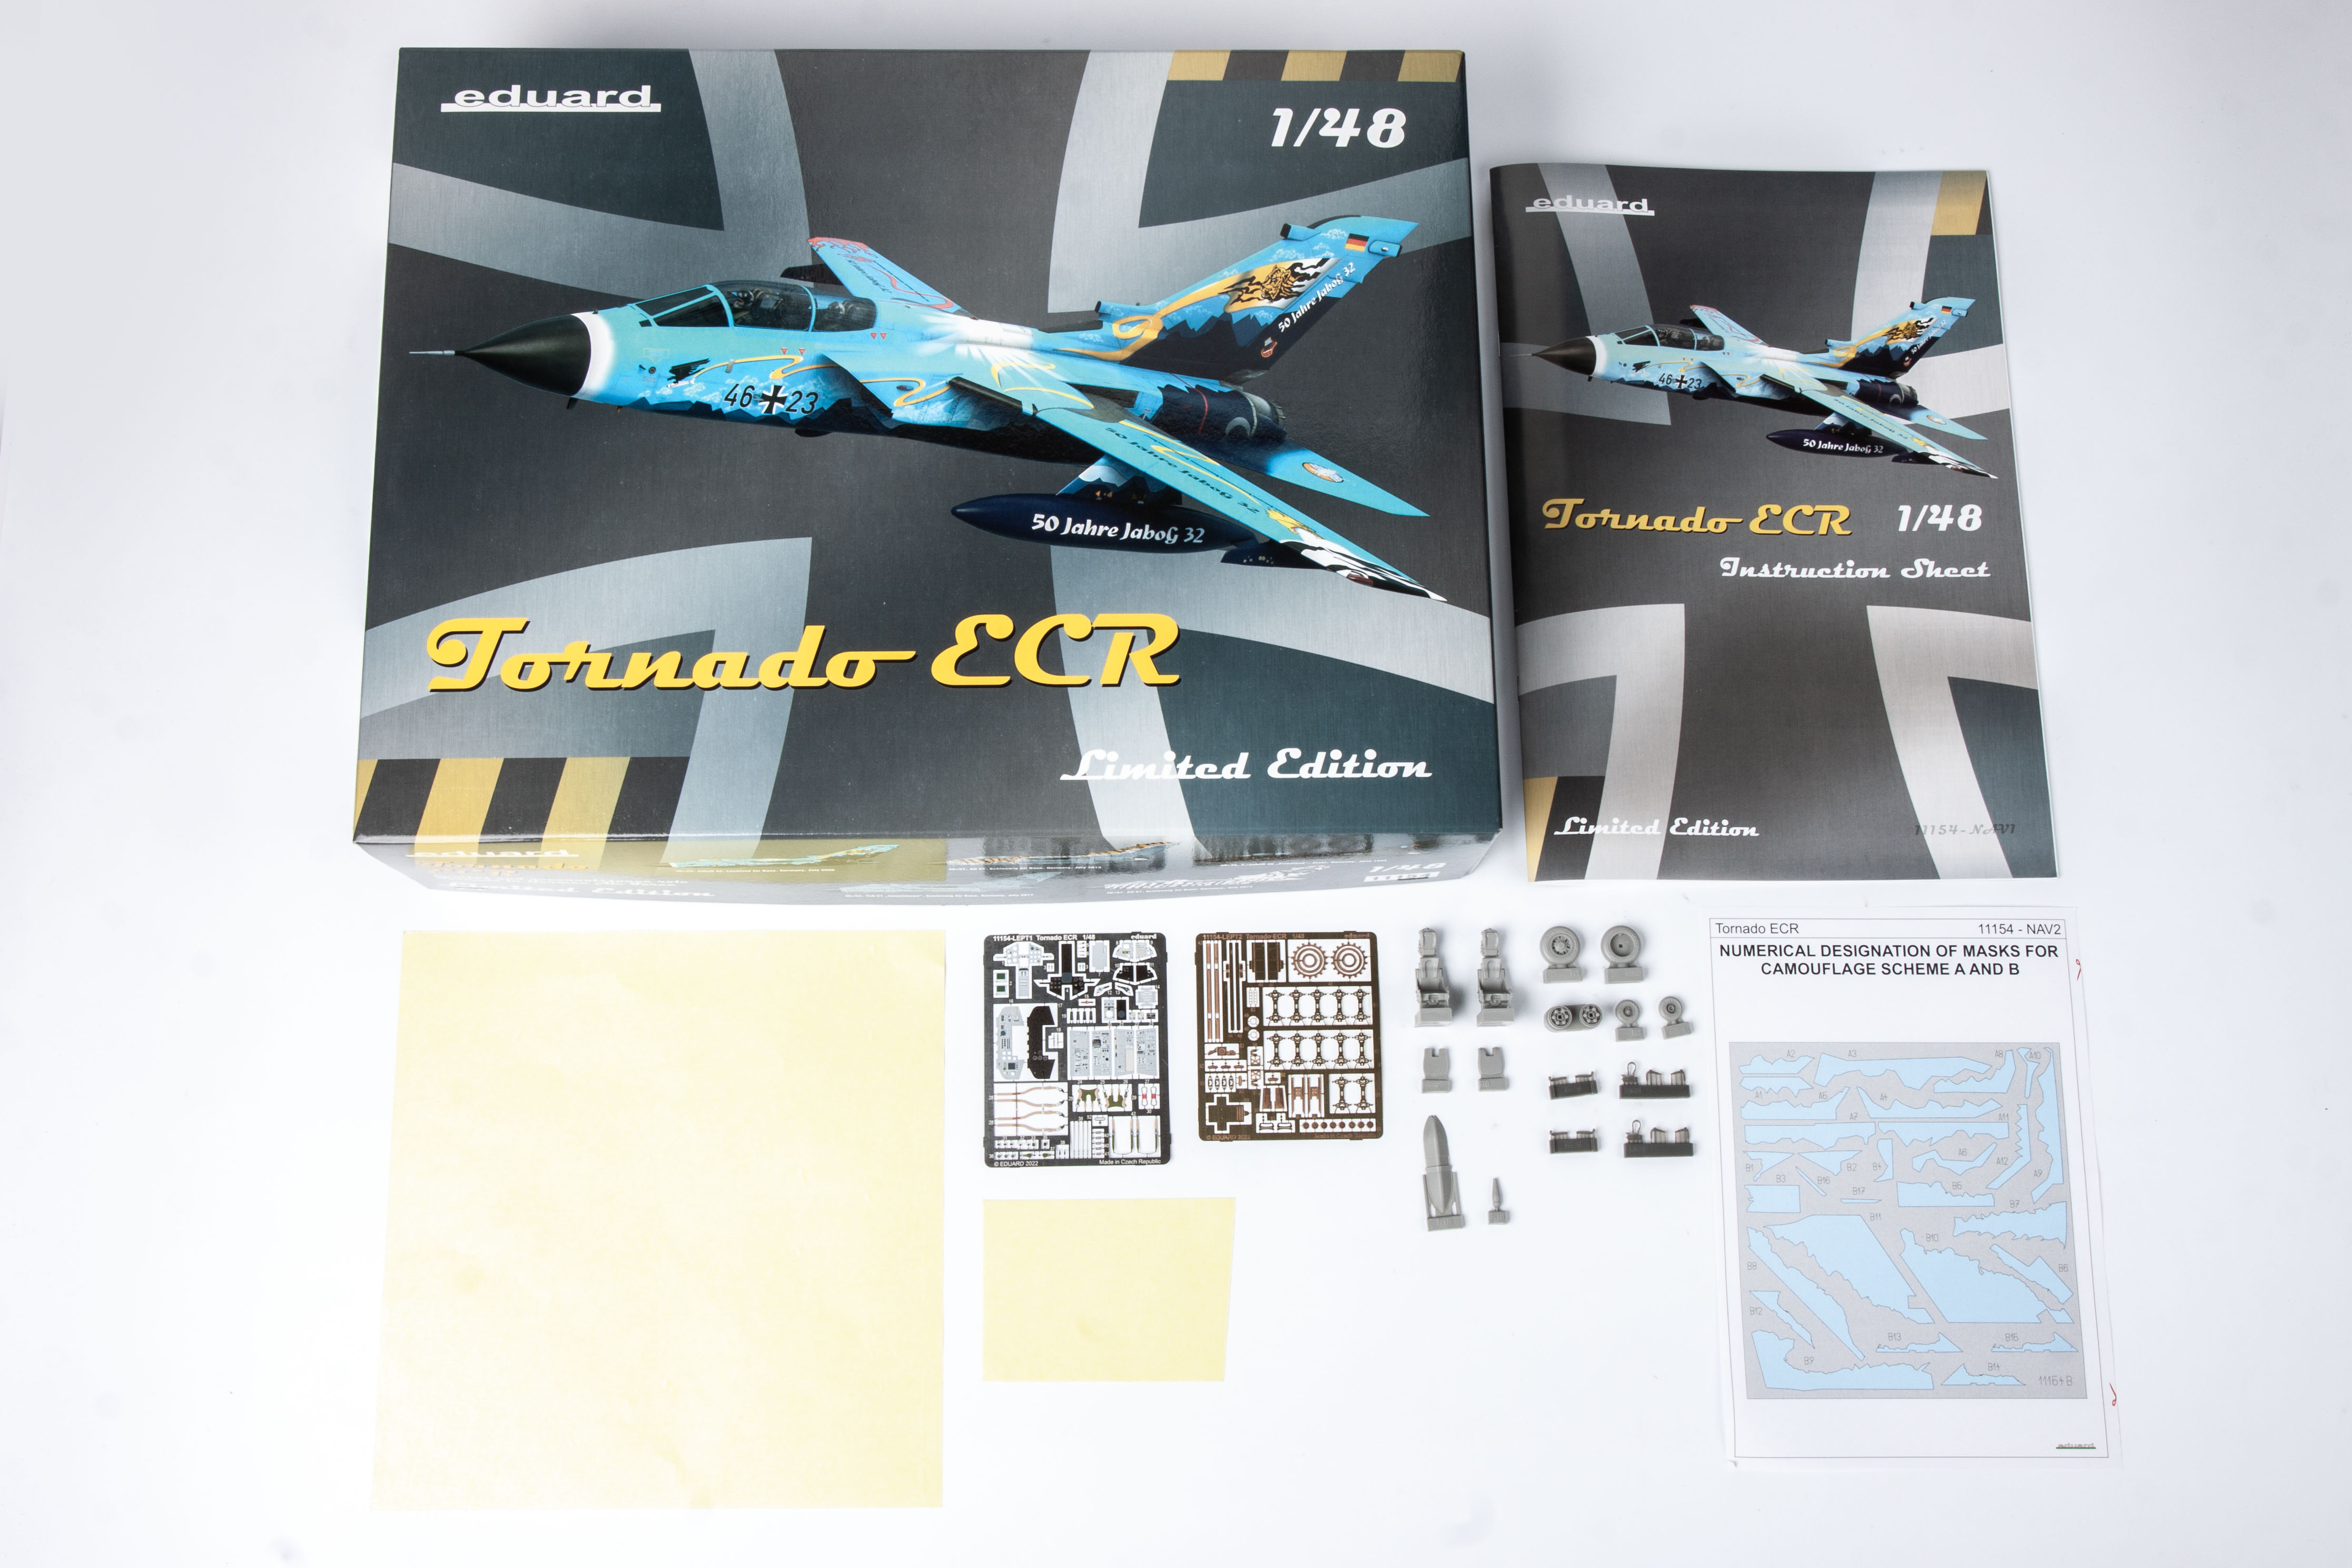 eduard-11154-2-Panavia-Tornado-ECR-Deutsche-Luftwaffe-limited-edition-Bausatz